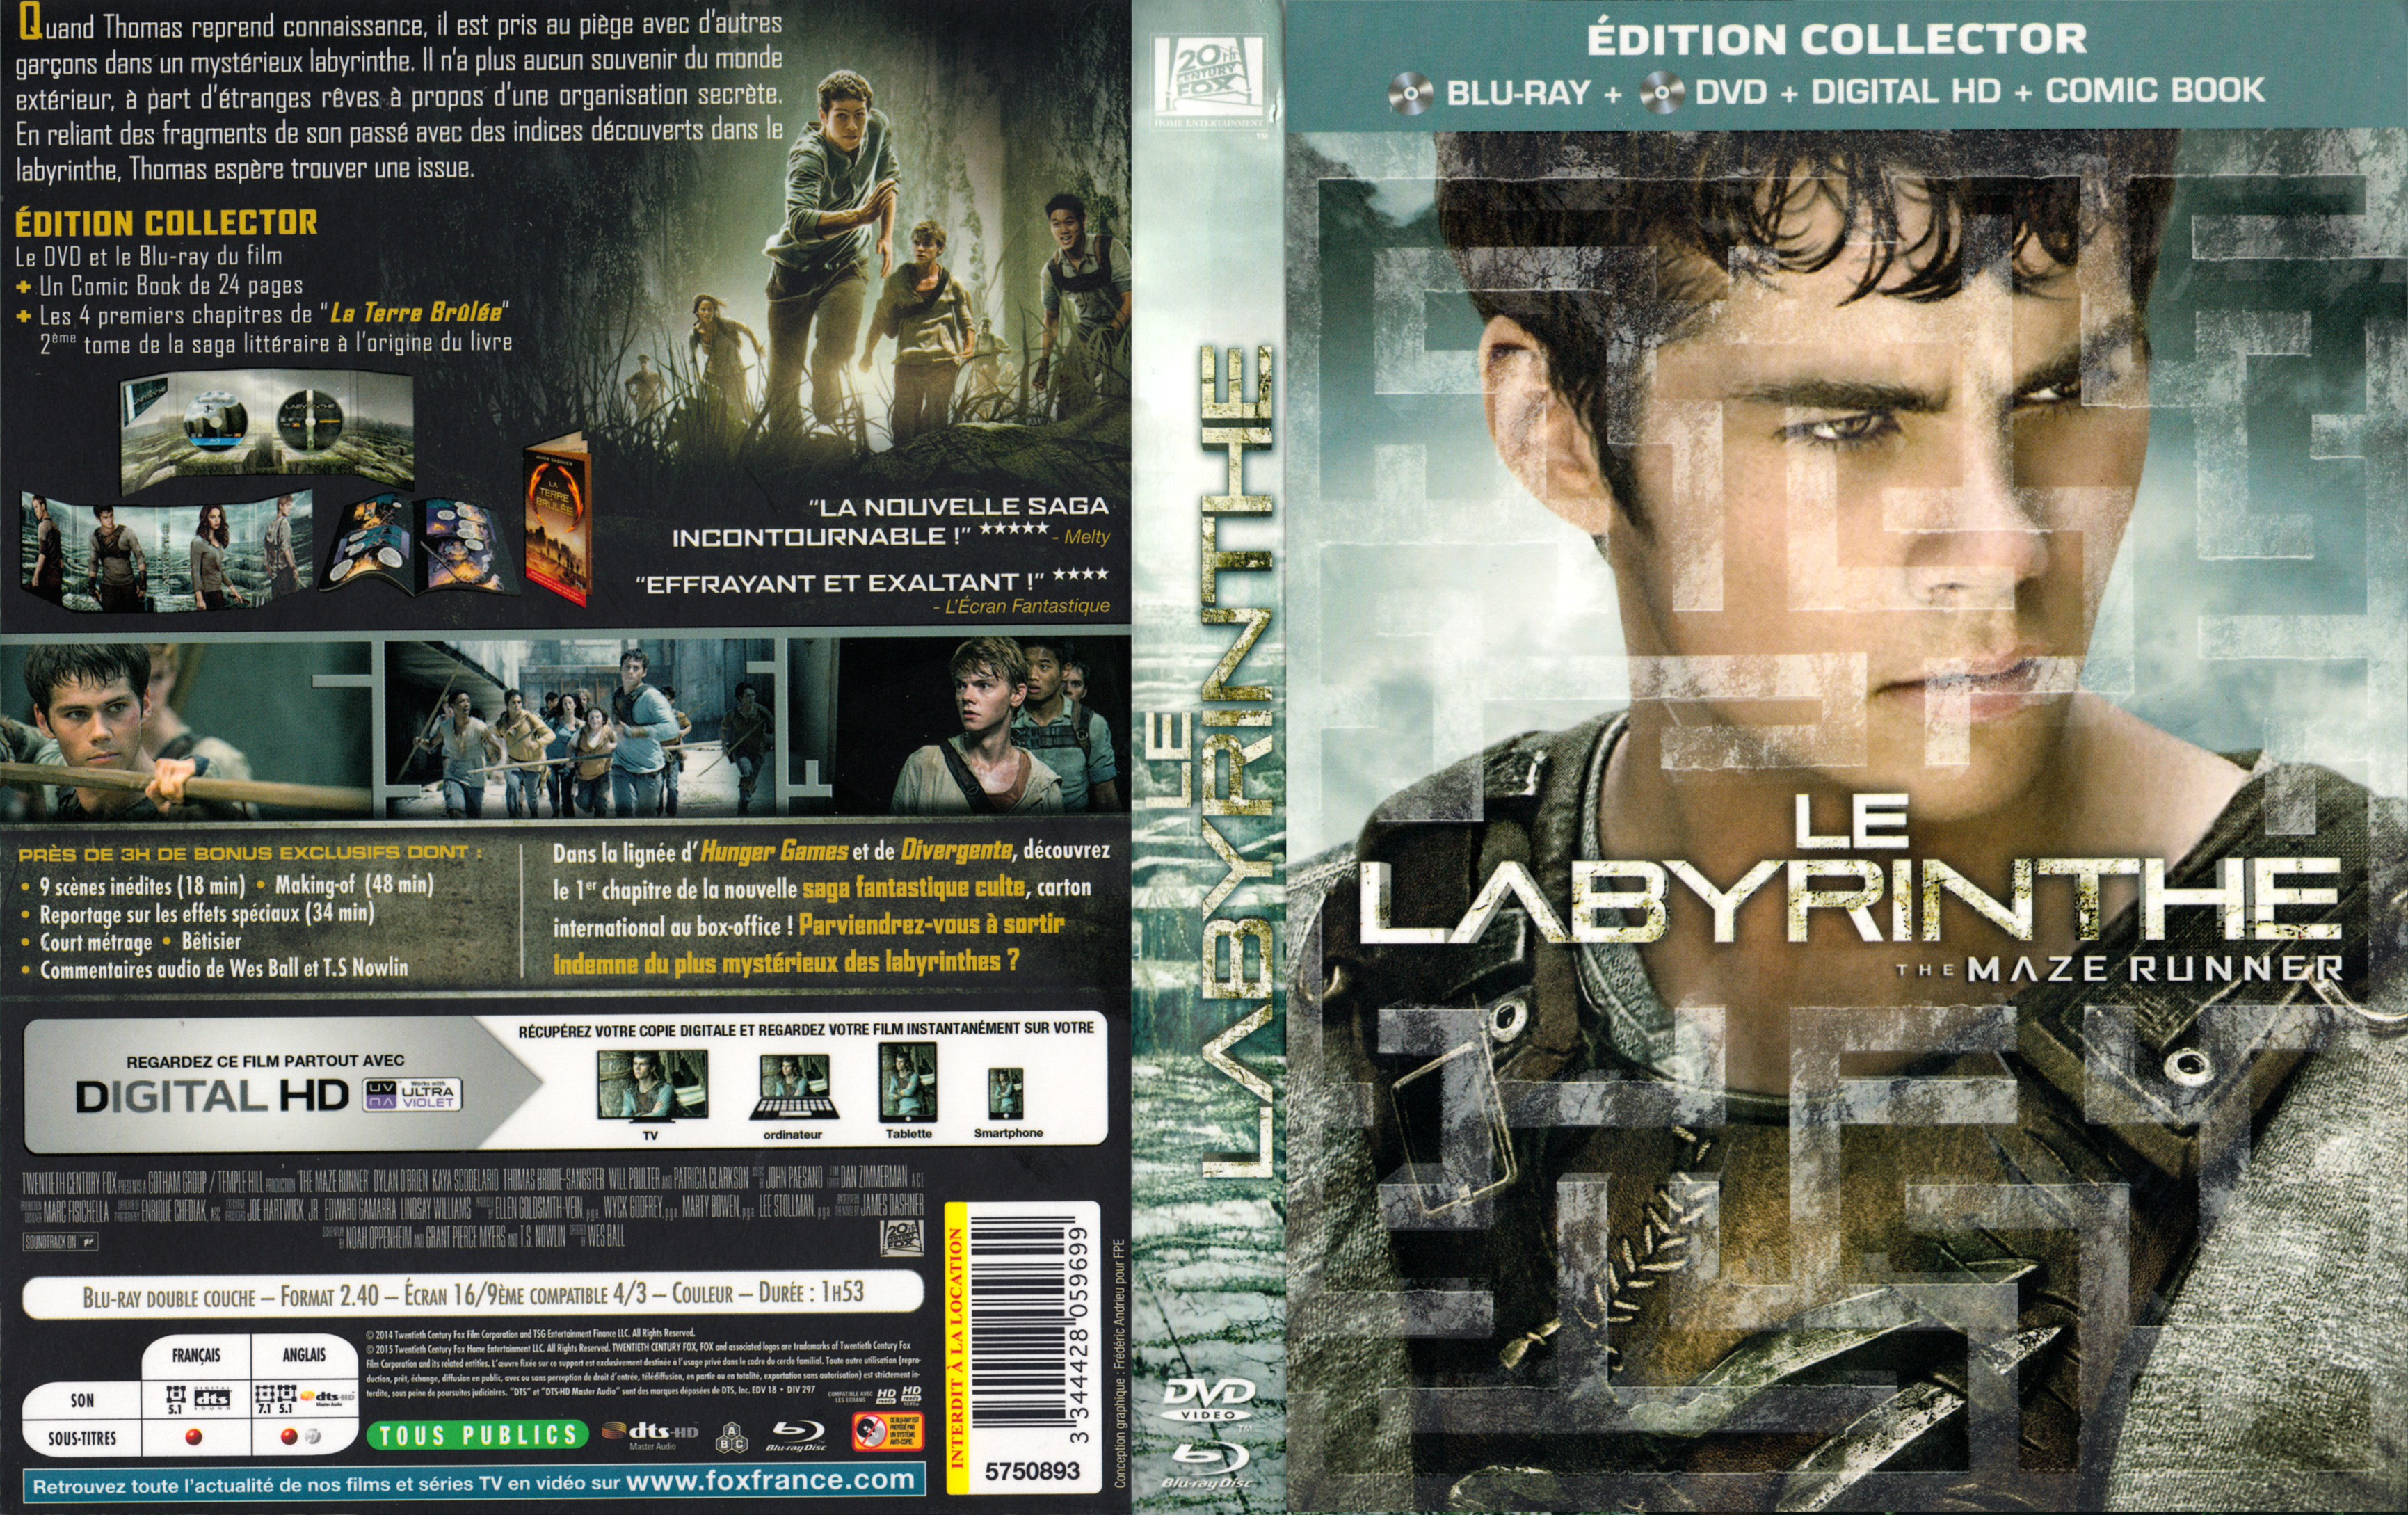 Jaquette DVD Le Labyrinthe v2